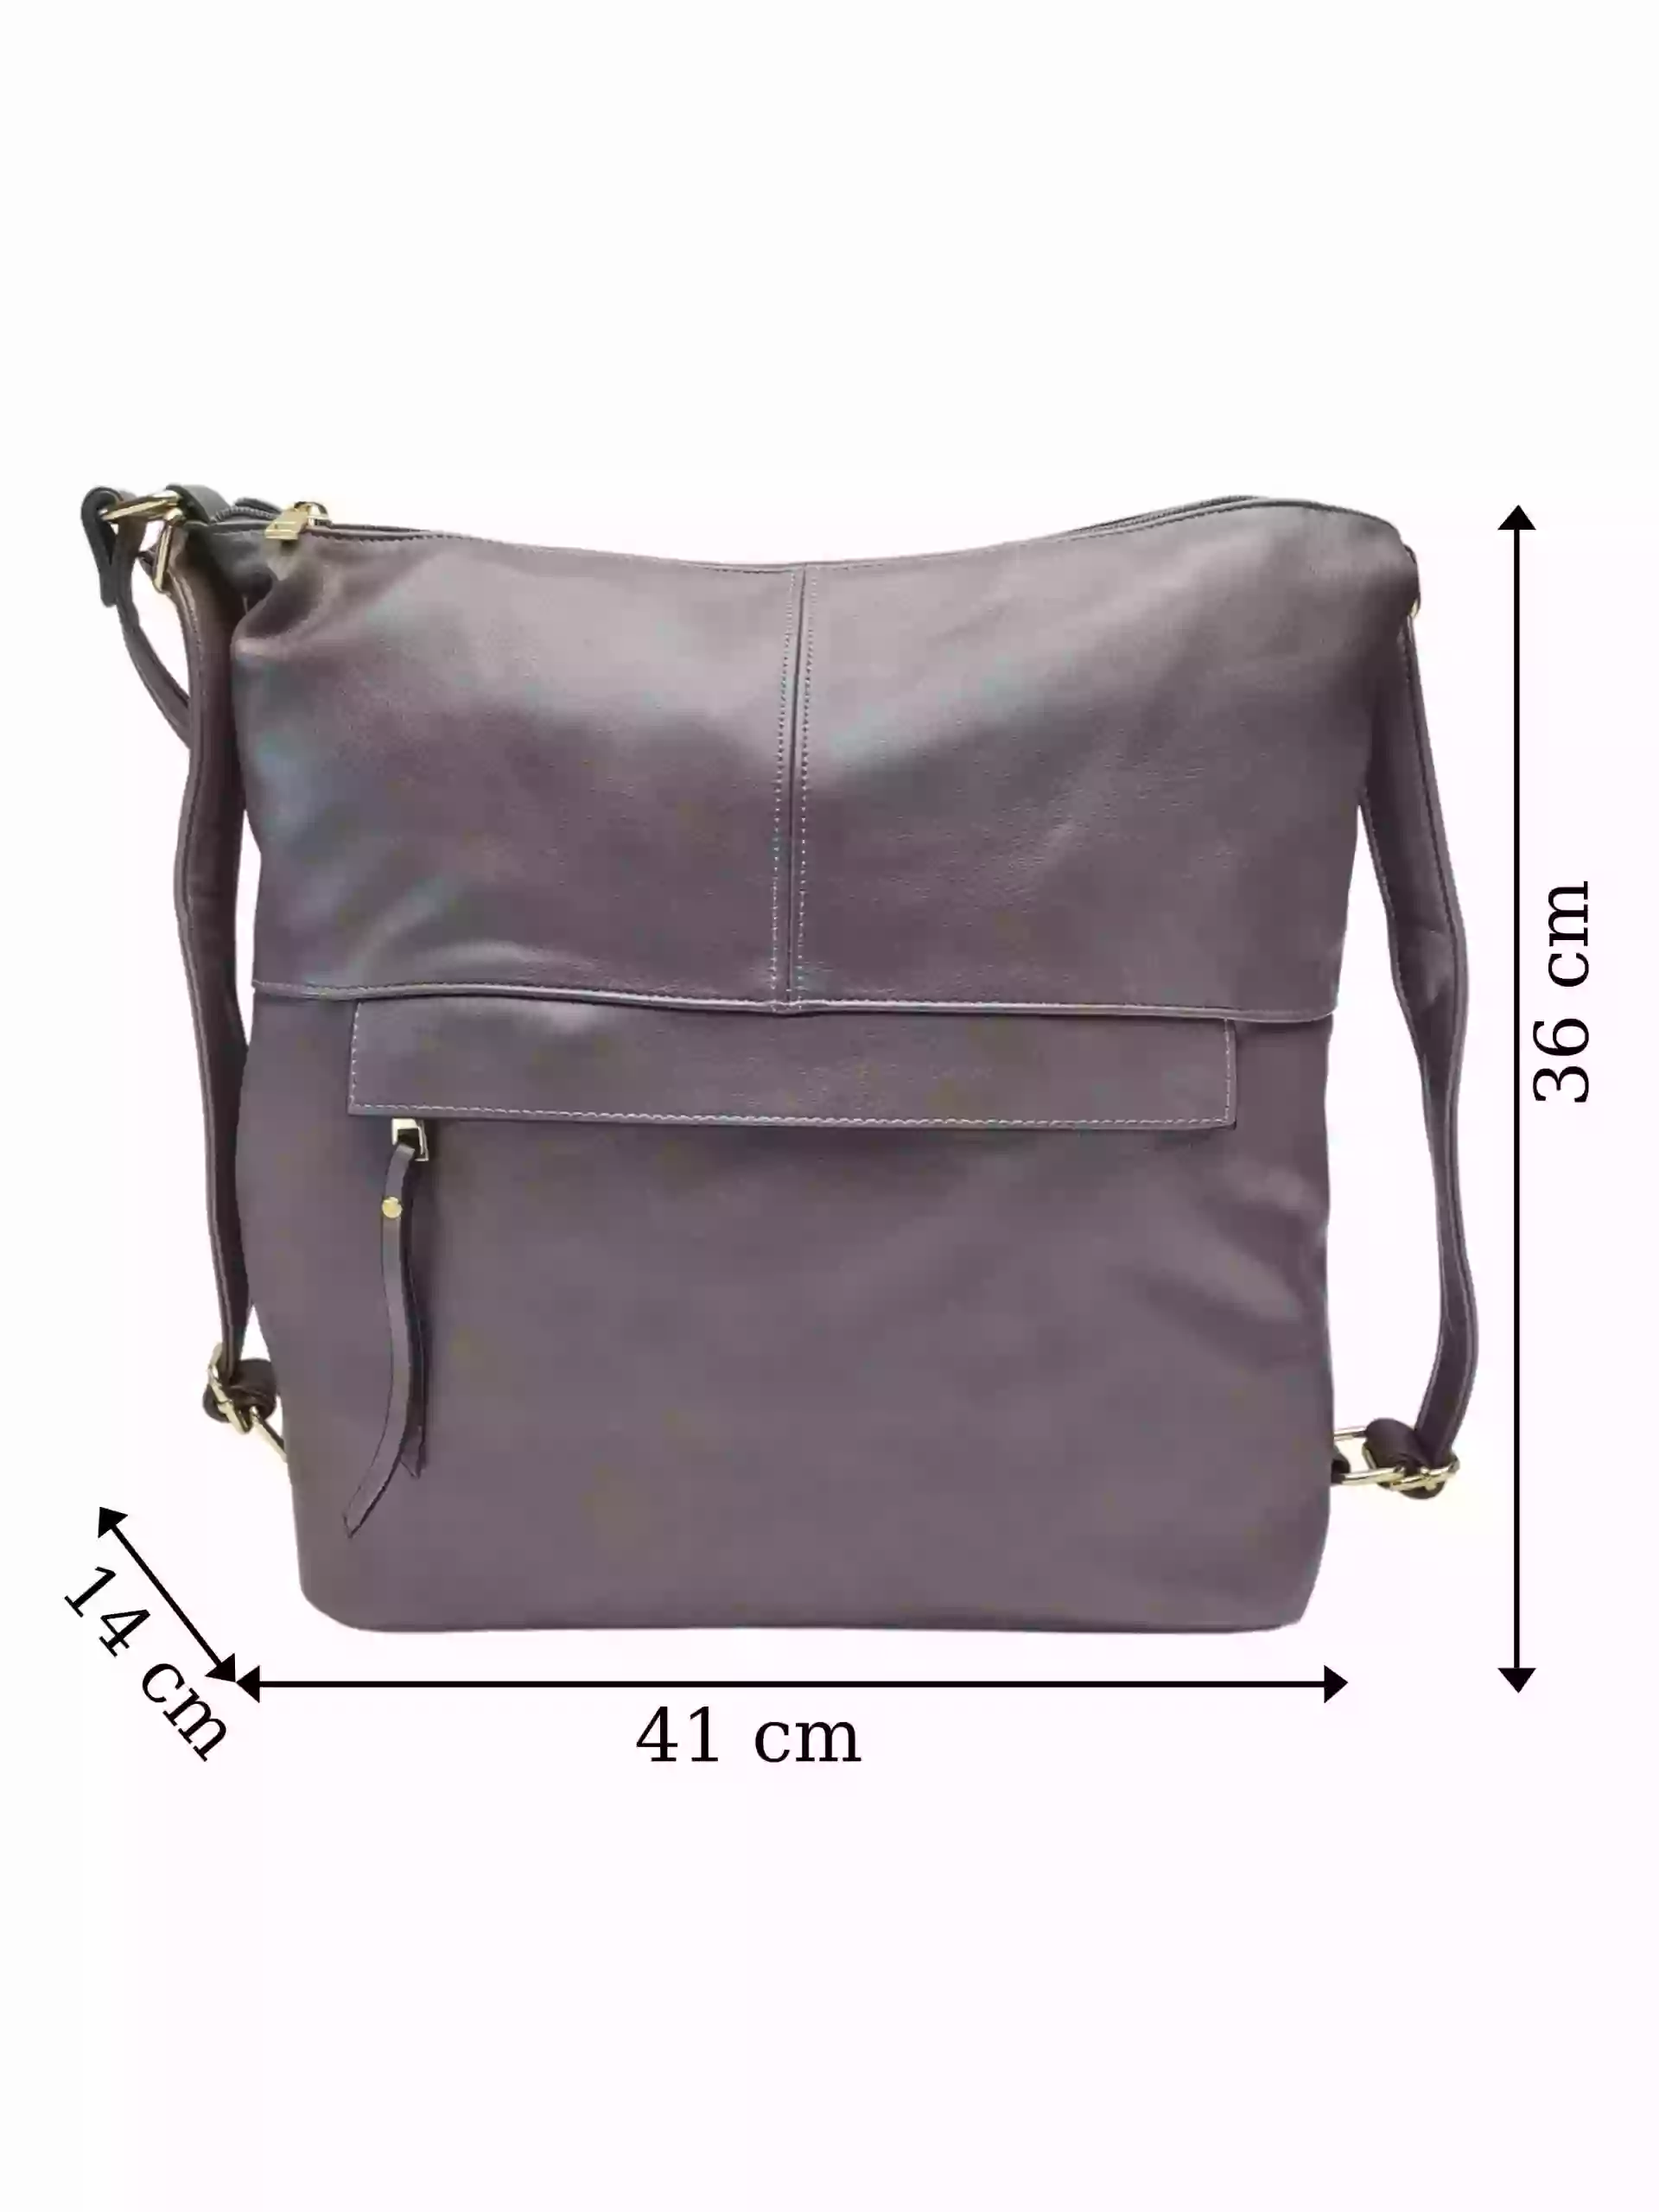 Prostorný šedohnědý kabelko-batoh 2v1 s přední kapsou, Caely, Q3071, přední strana kabelko-batohu 2v1 s rozměry